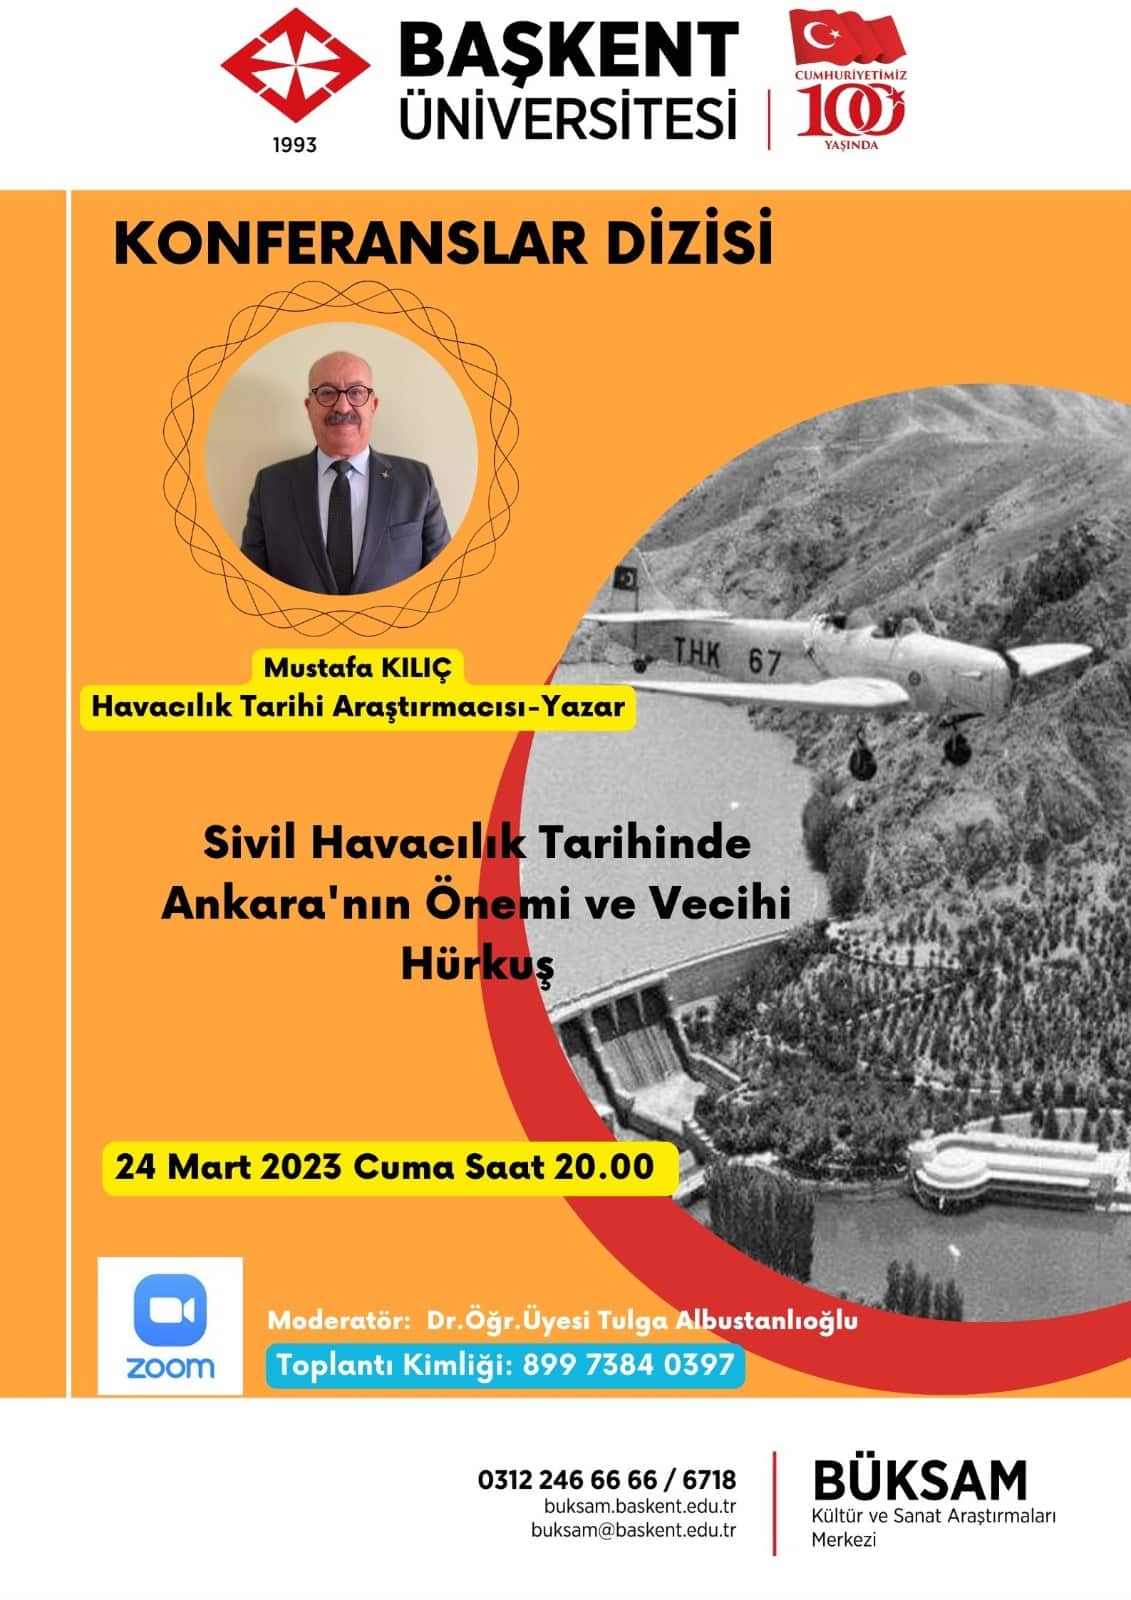 Mustafa Kılıç Online Konferans Düzenliyor